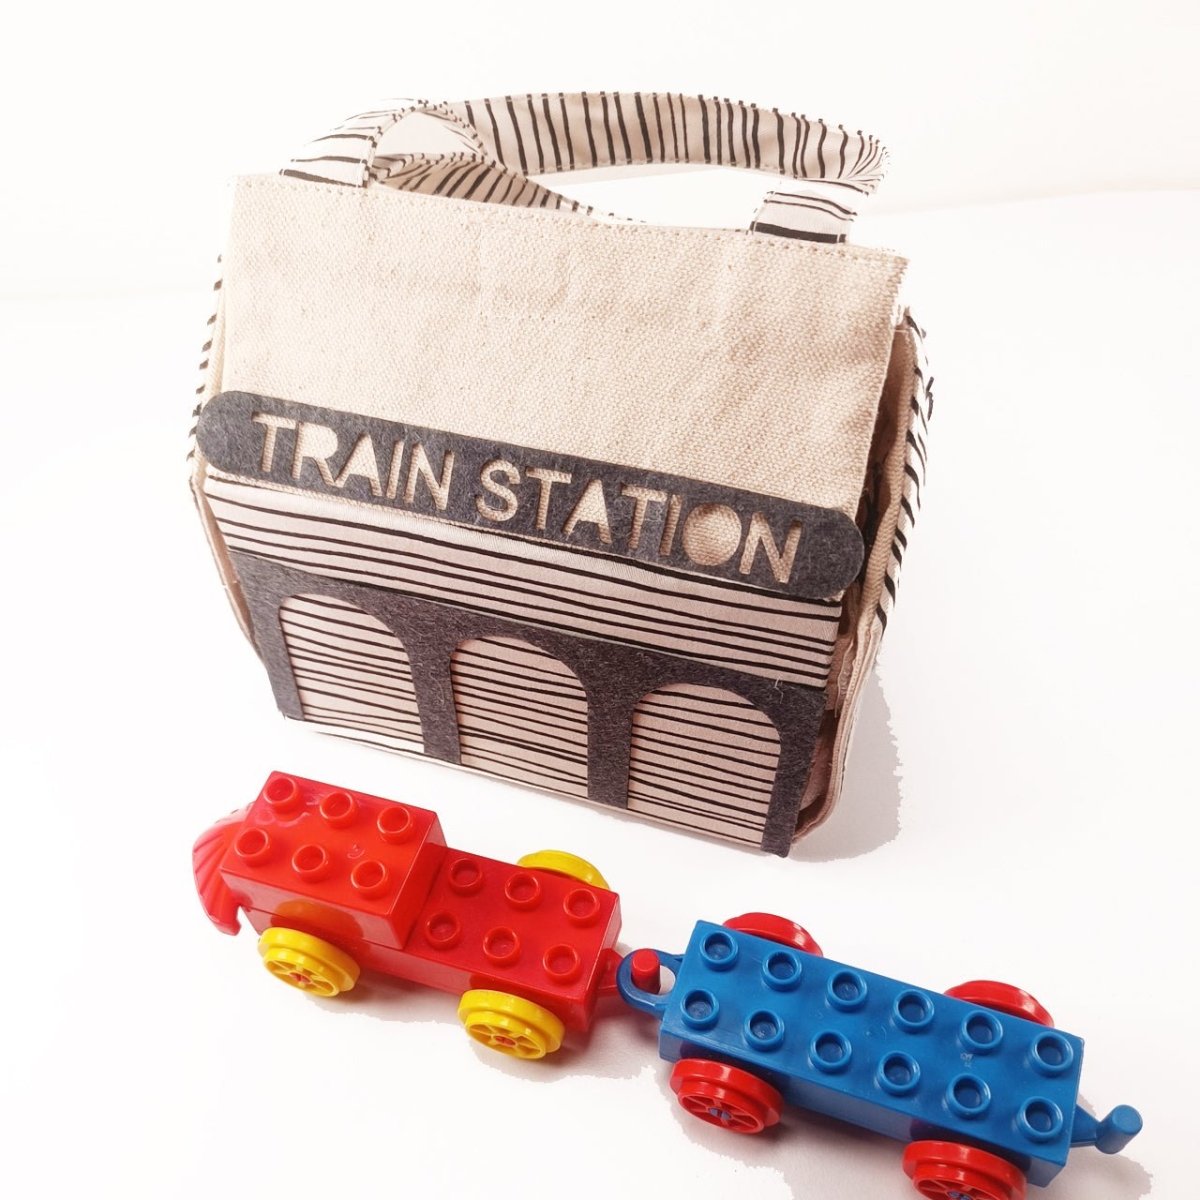 CuddlyCoo Fabric Doll House- Train Station - CCDOLLHOUSEBAGTRAINSTATION